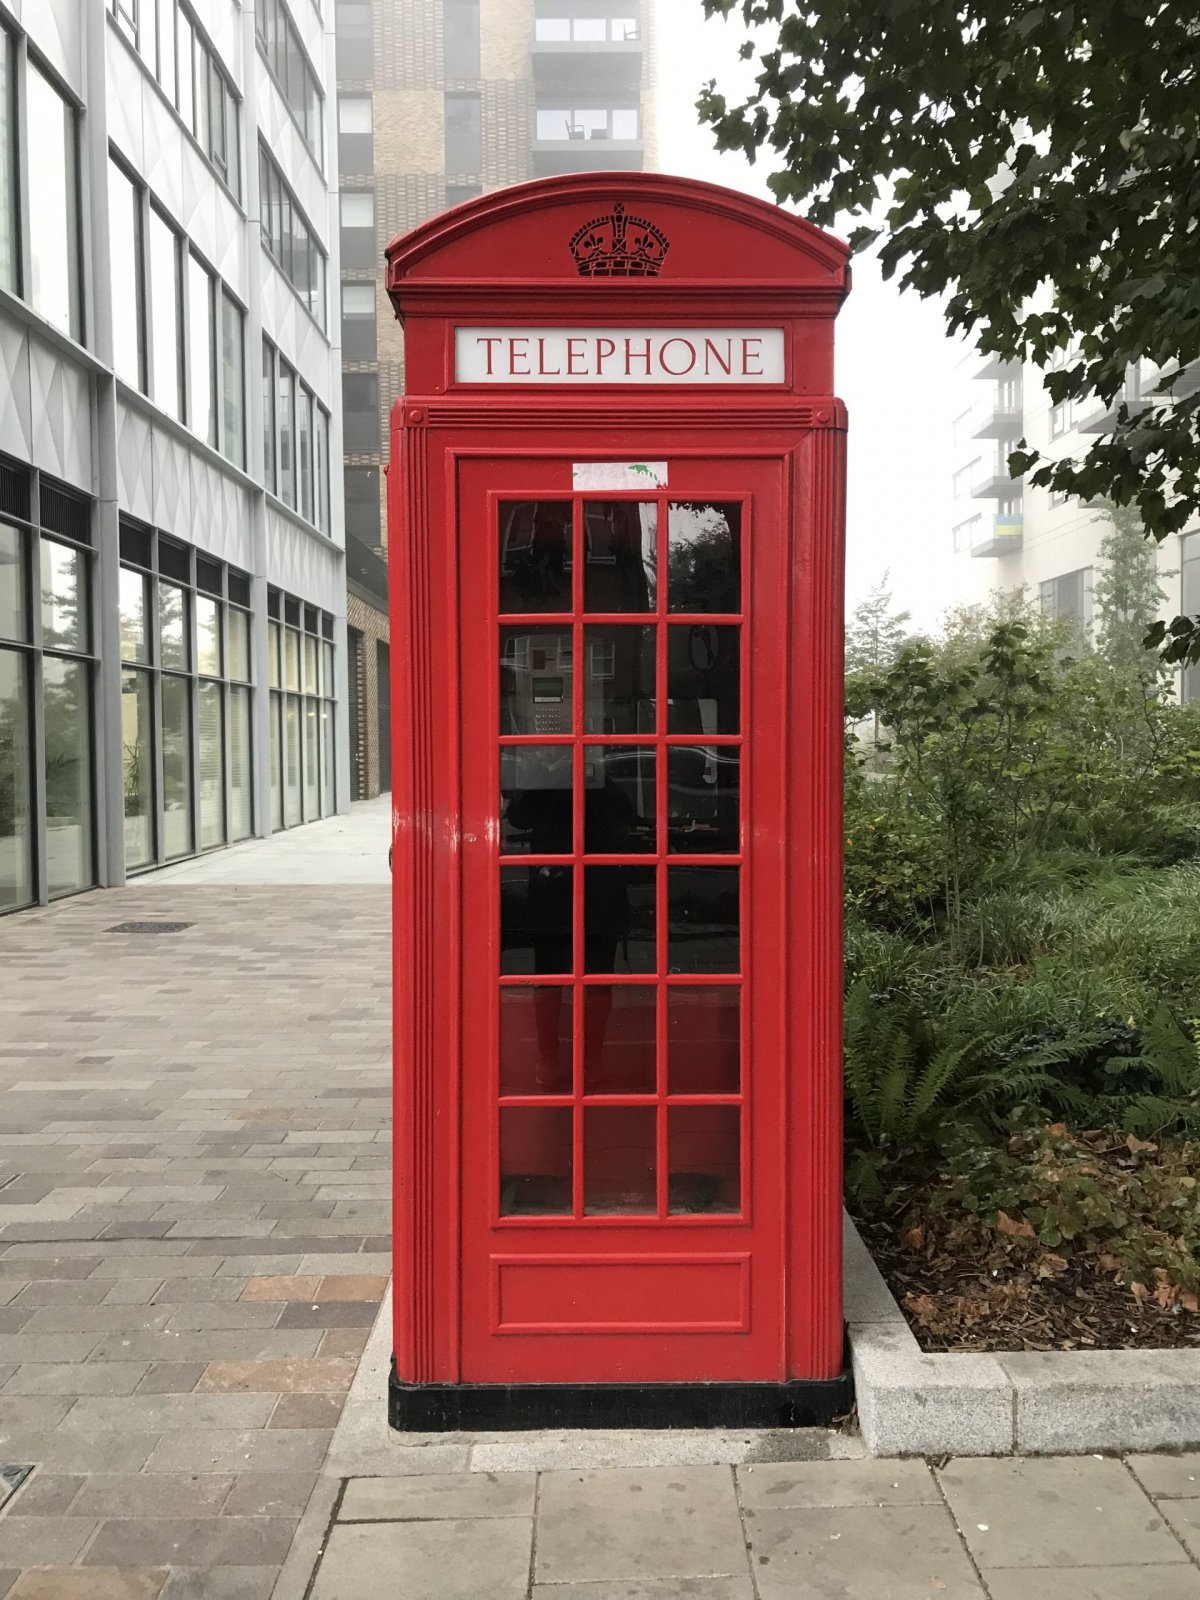 Co by to bylo za výlet do Londýna bez kýčovitý fotky telefonní budky?